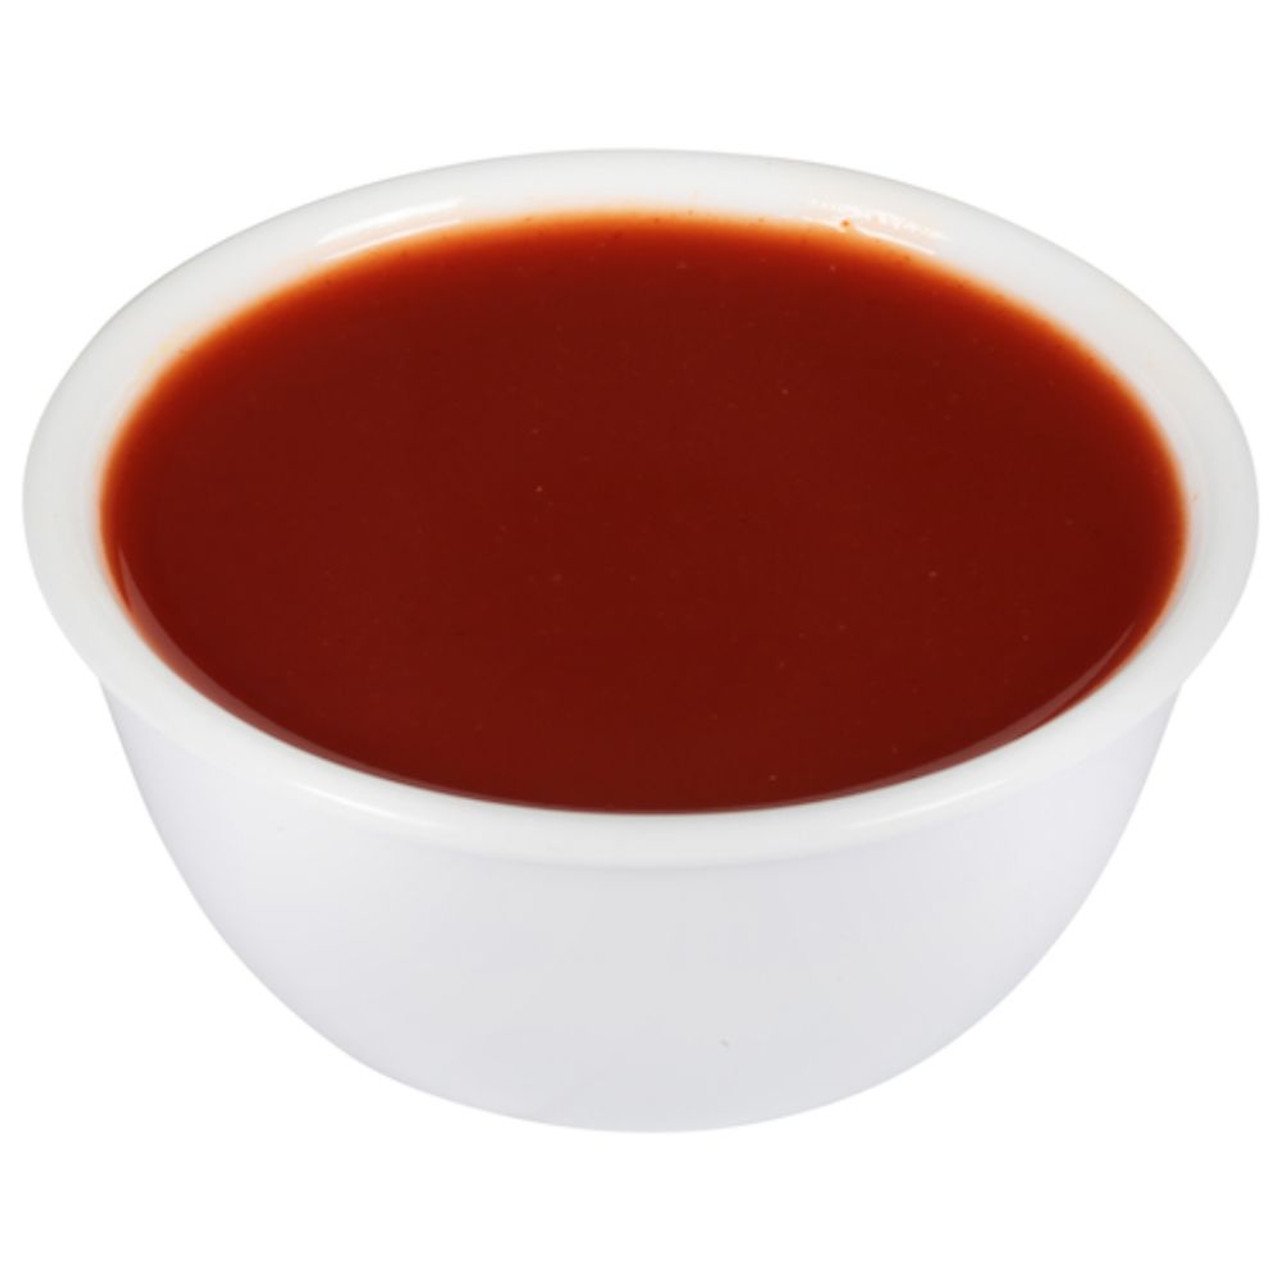 Wingers Louisiana Hot Sauce - 4 x 1 Gal